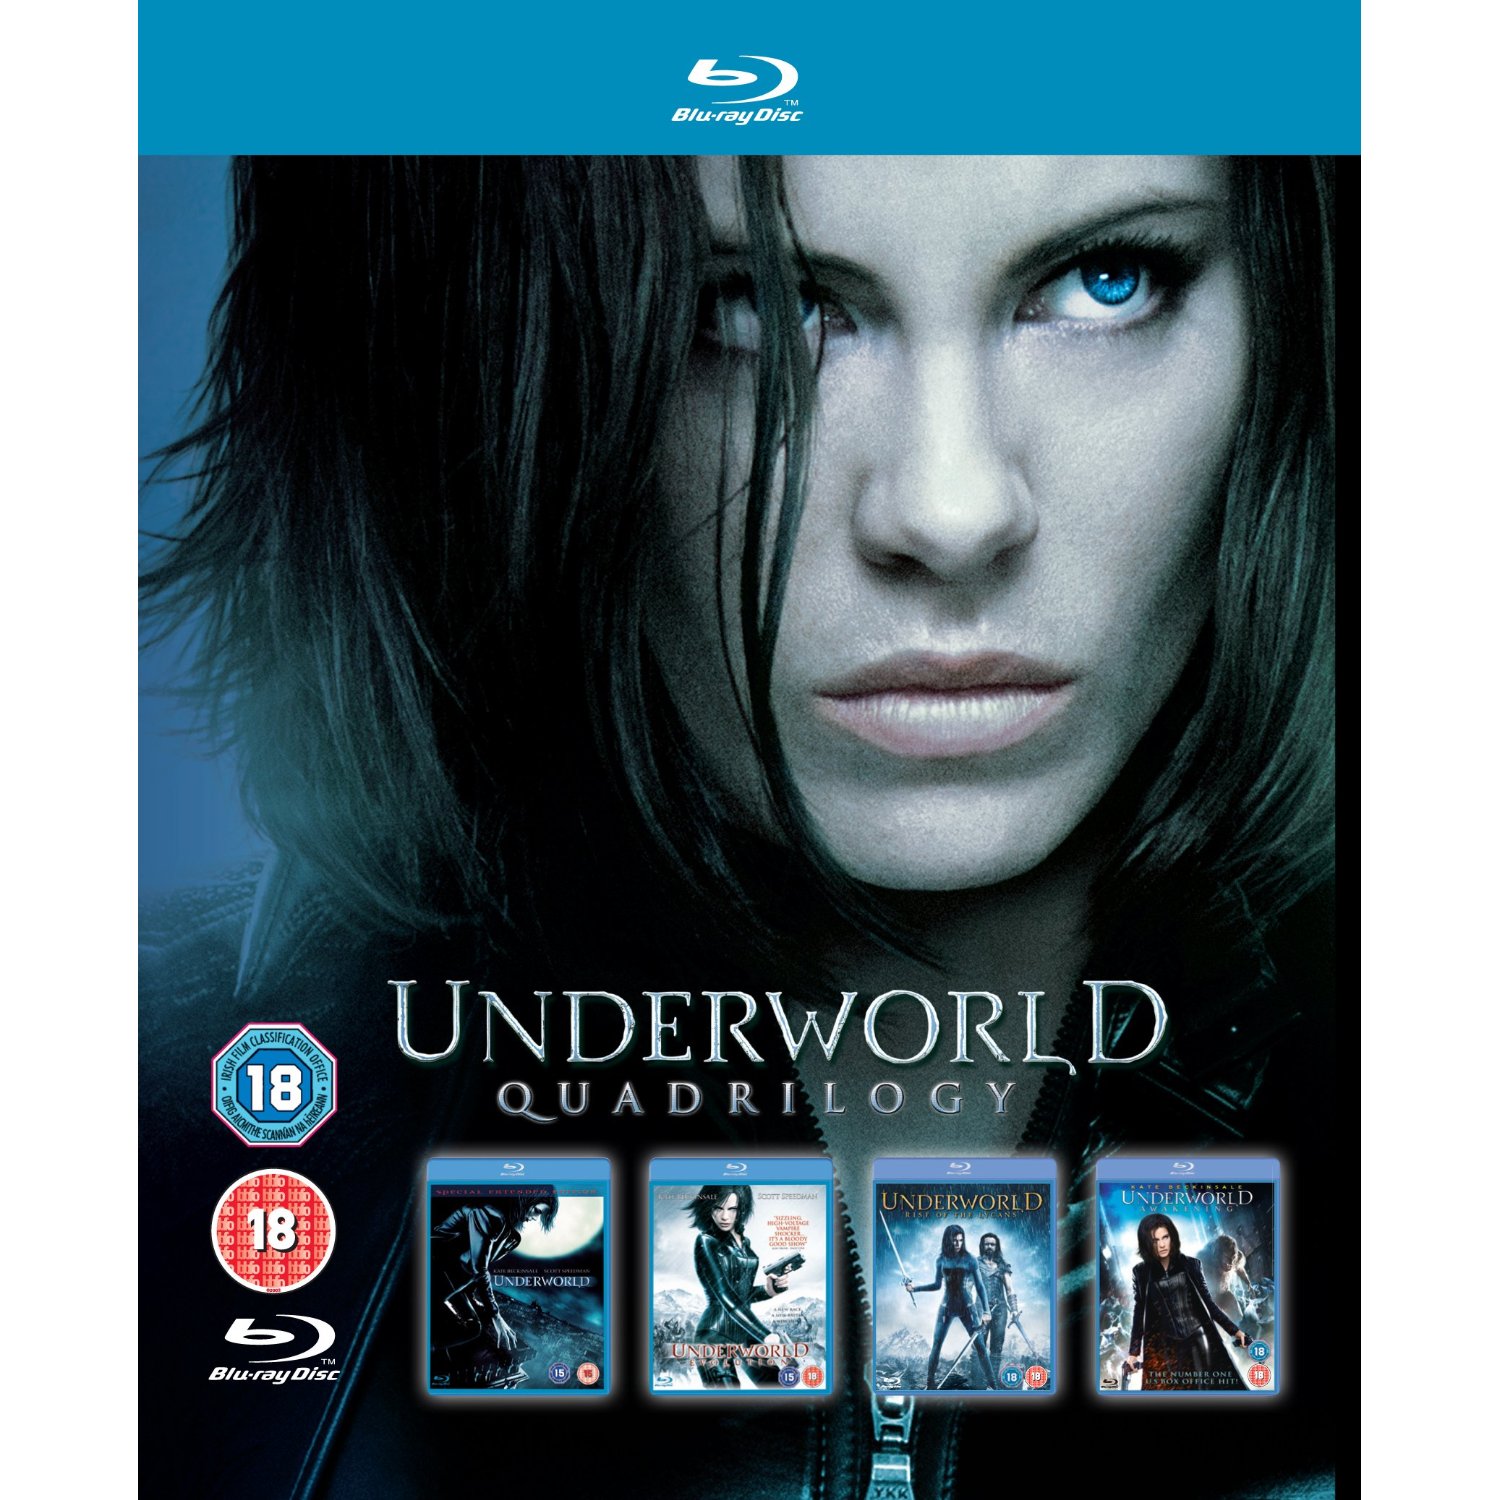 Underworld 1-4 (2003-2012)